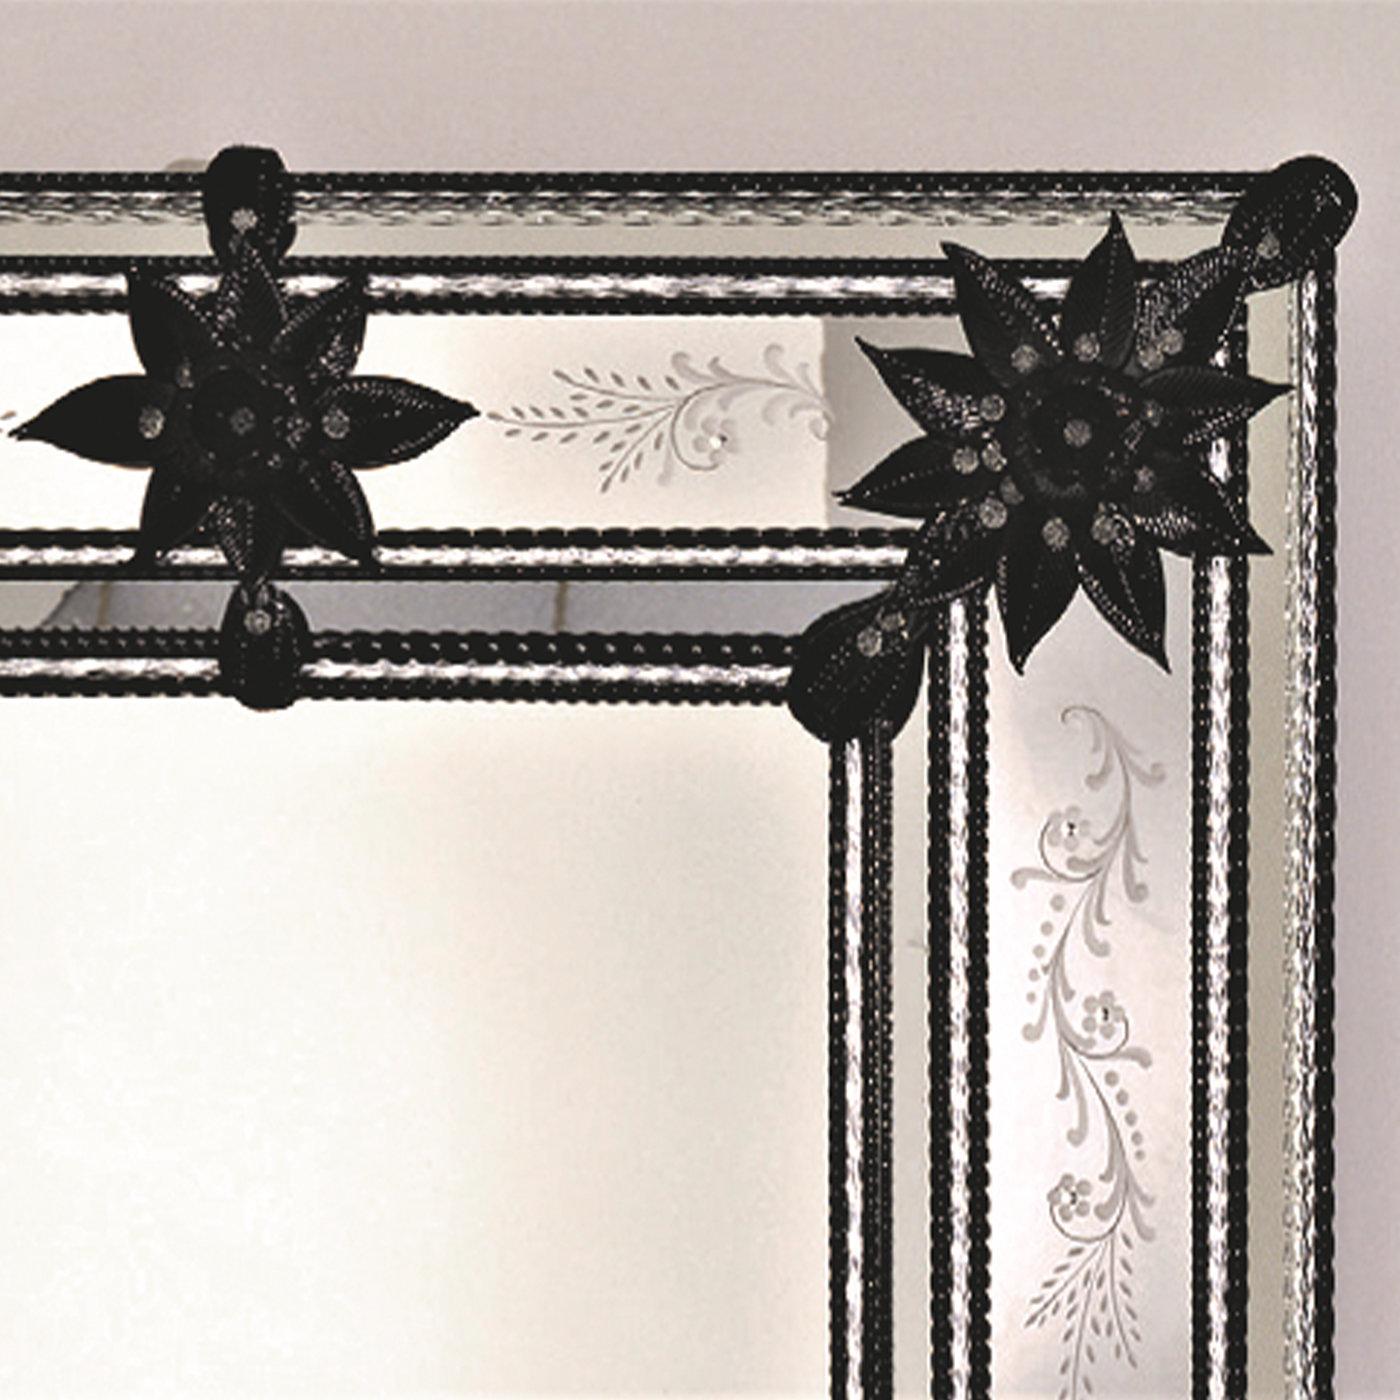 Miroir de style vénitien fabriqué en verre de Murano et gravé à la main. Le miroir présente des feuilles et des fleurs noires en verre.